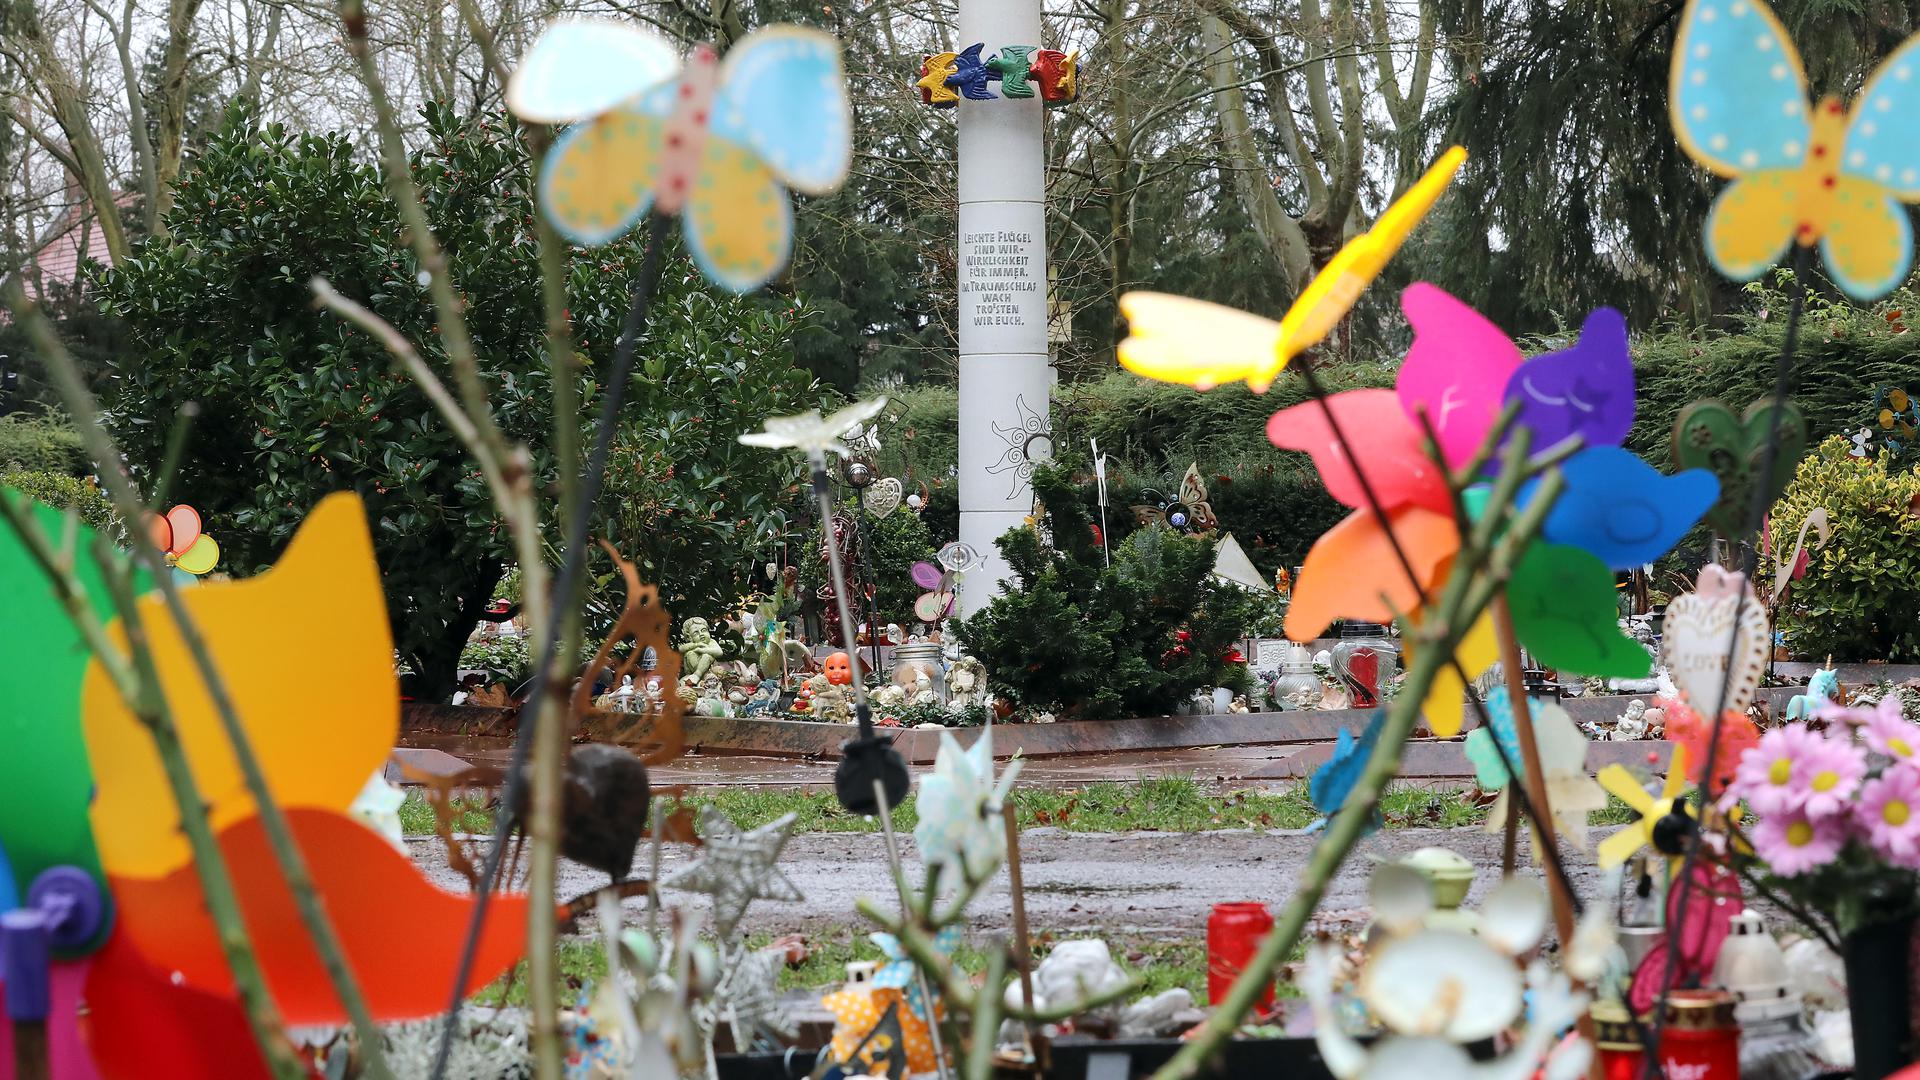 Bunt ist die Trauer: Auf dem Sternenkinder-Gräberfeld des Hauptfriedhofs werden totgeborene und fehlgeborene Kinder bestattet.  